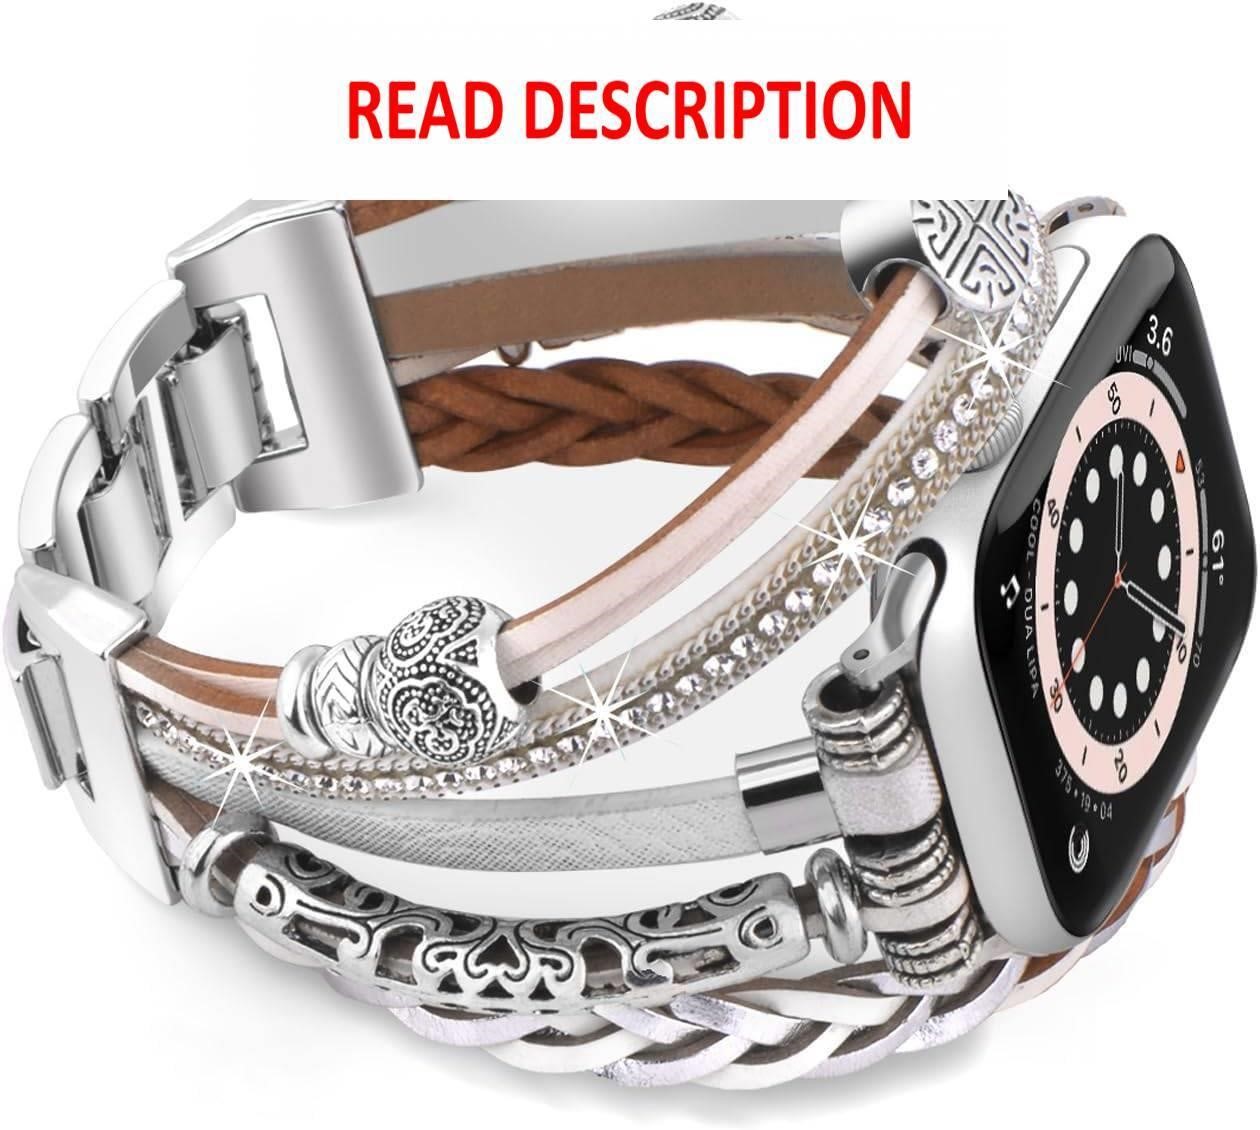 Silver beaded watch bracelet